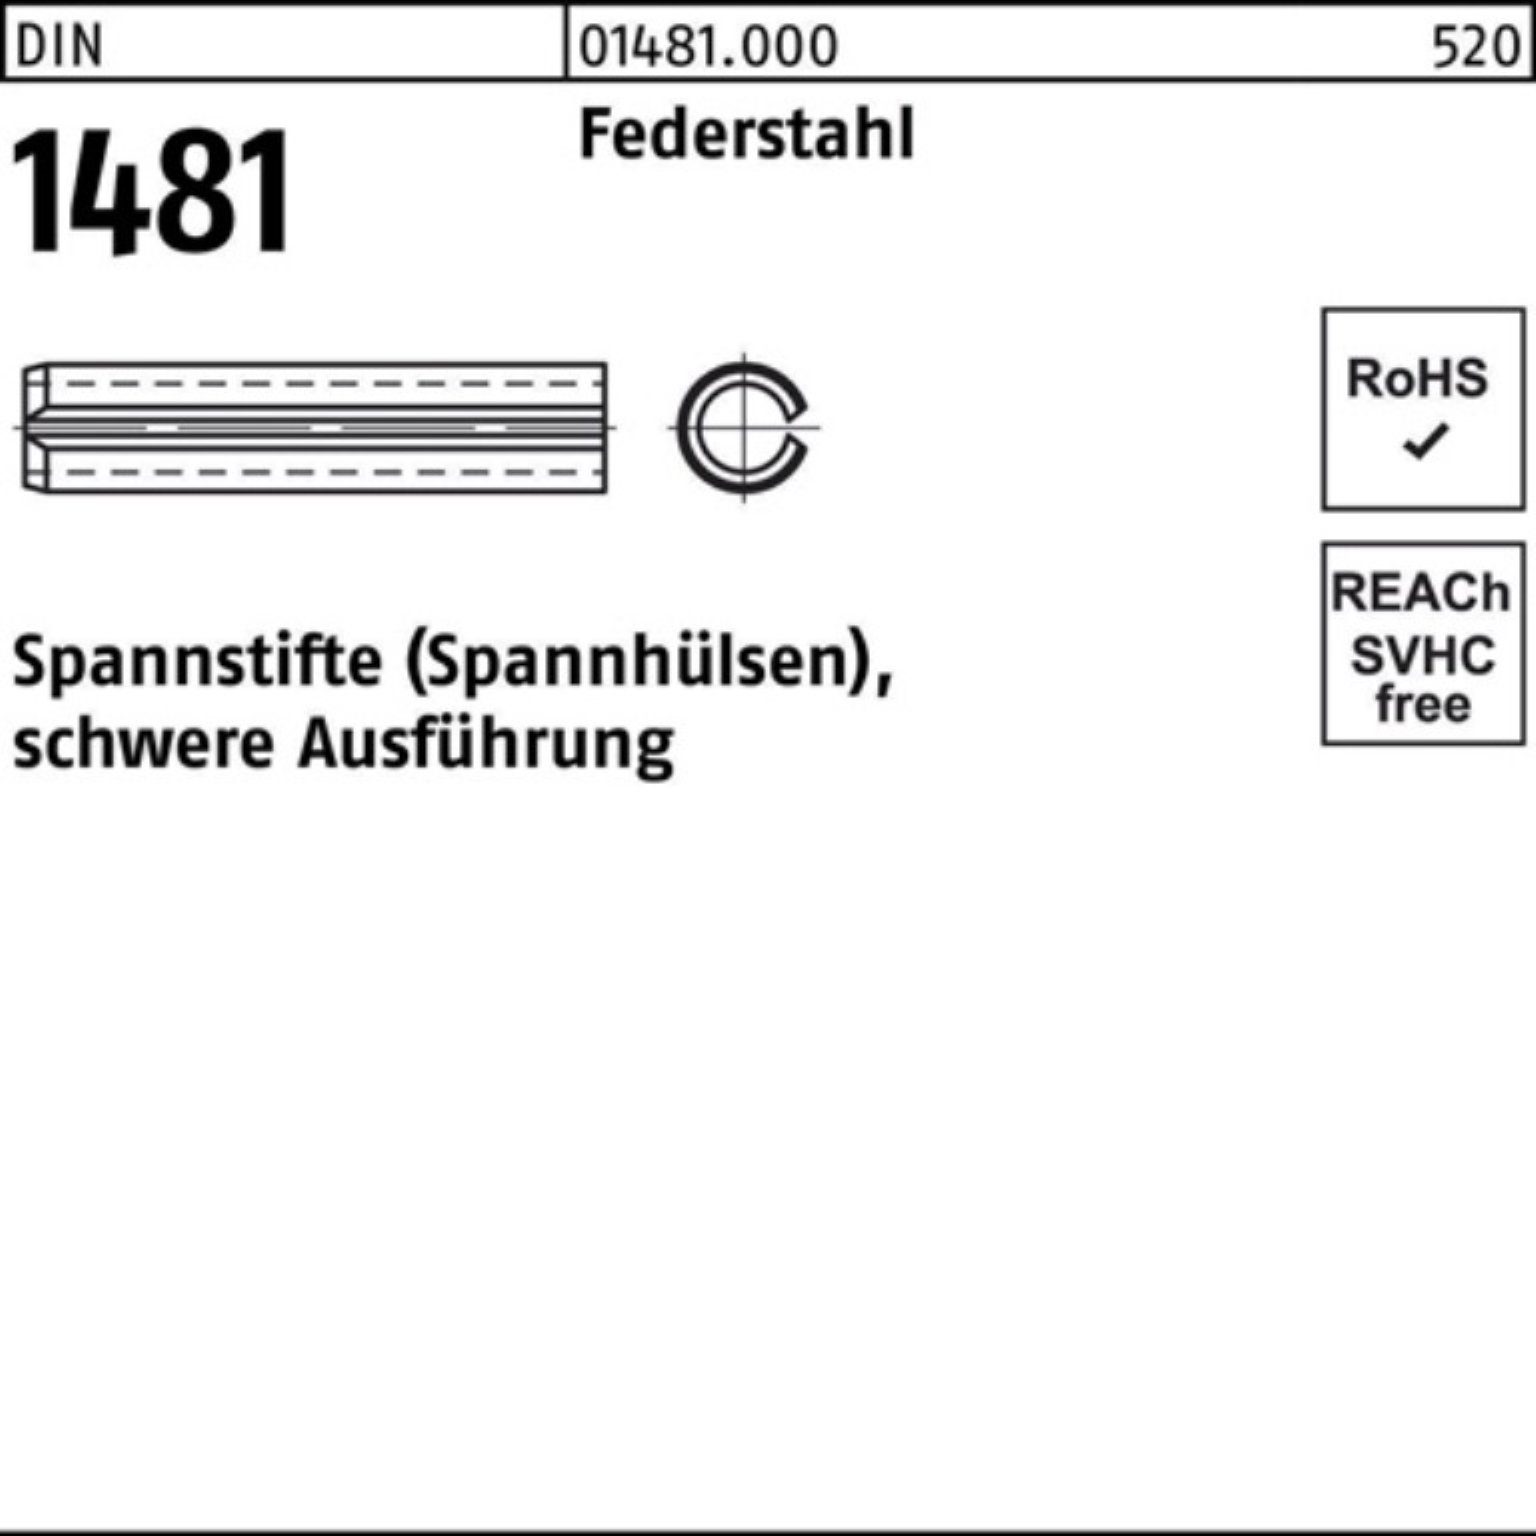 Reyher Spannstift 100er Pack Spannstift DIN 1481 10x 160 Federstahl schwere Ausführung